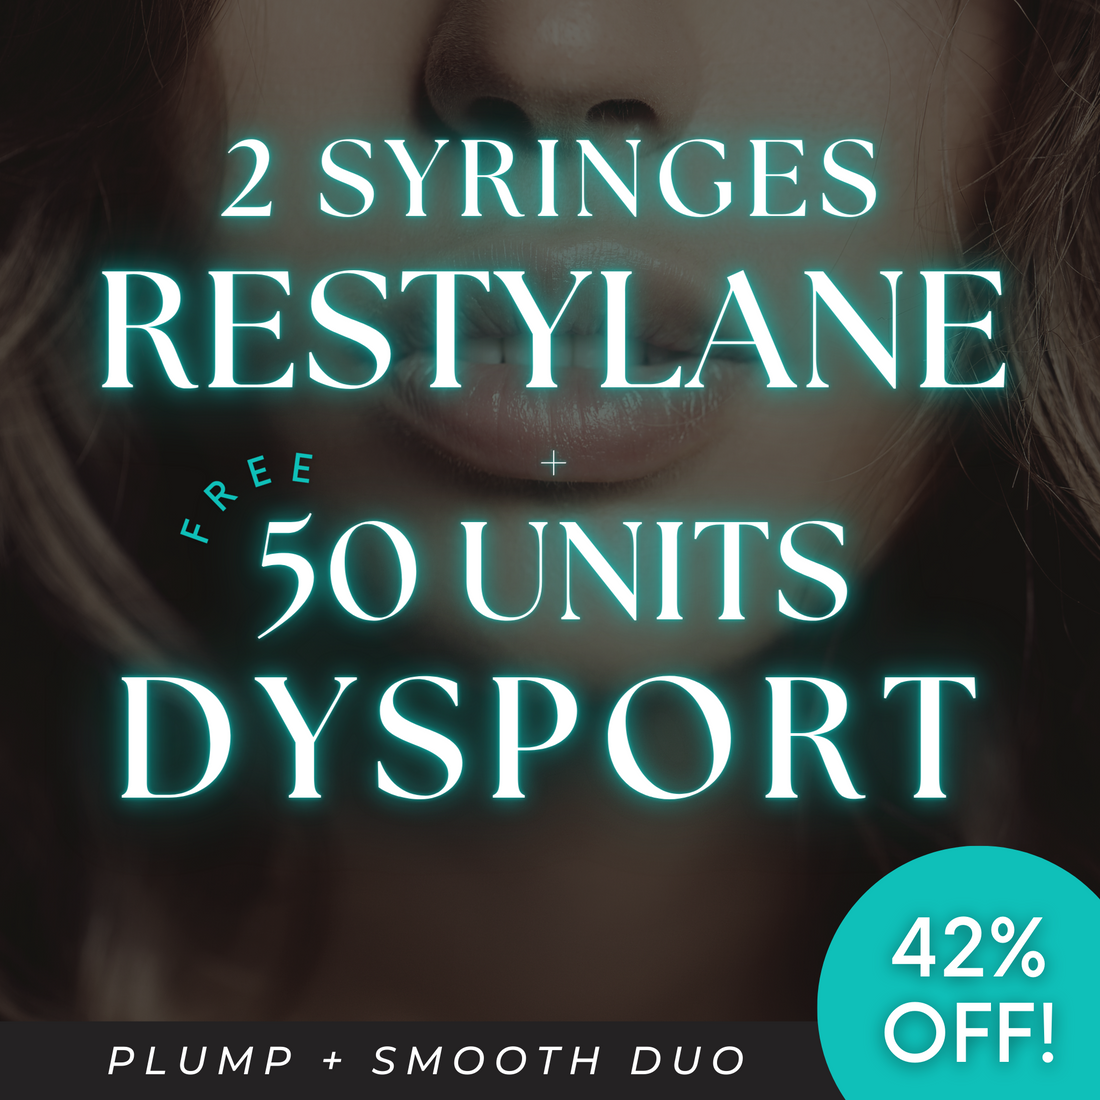 33% OFF 2 Syringes Restylane Filler + 50 Units Dysport FREE